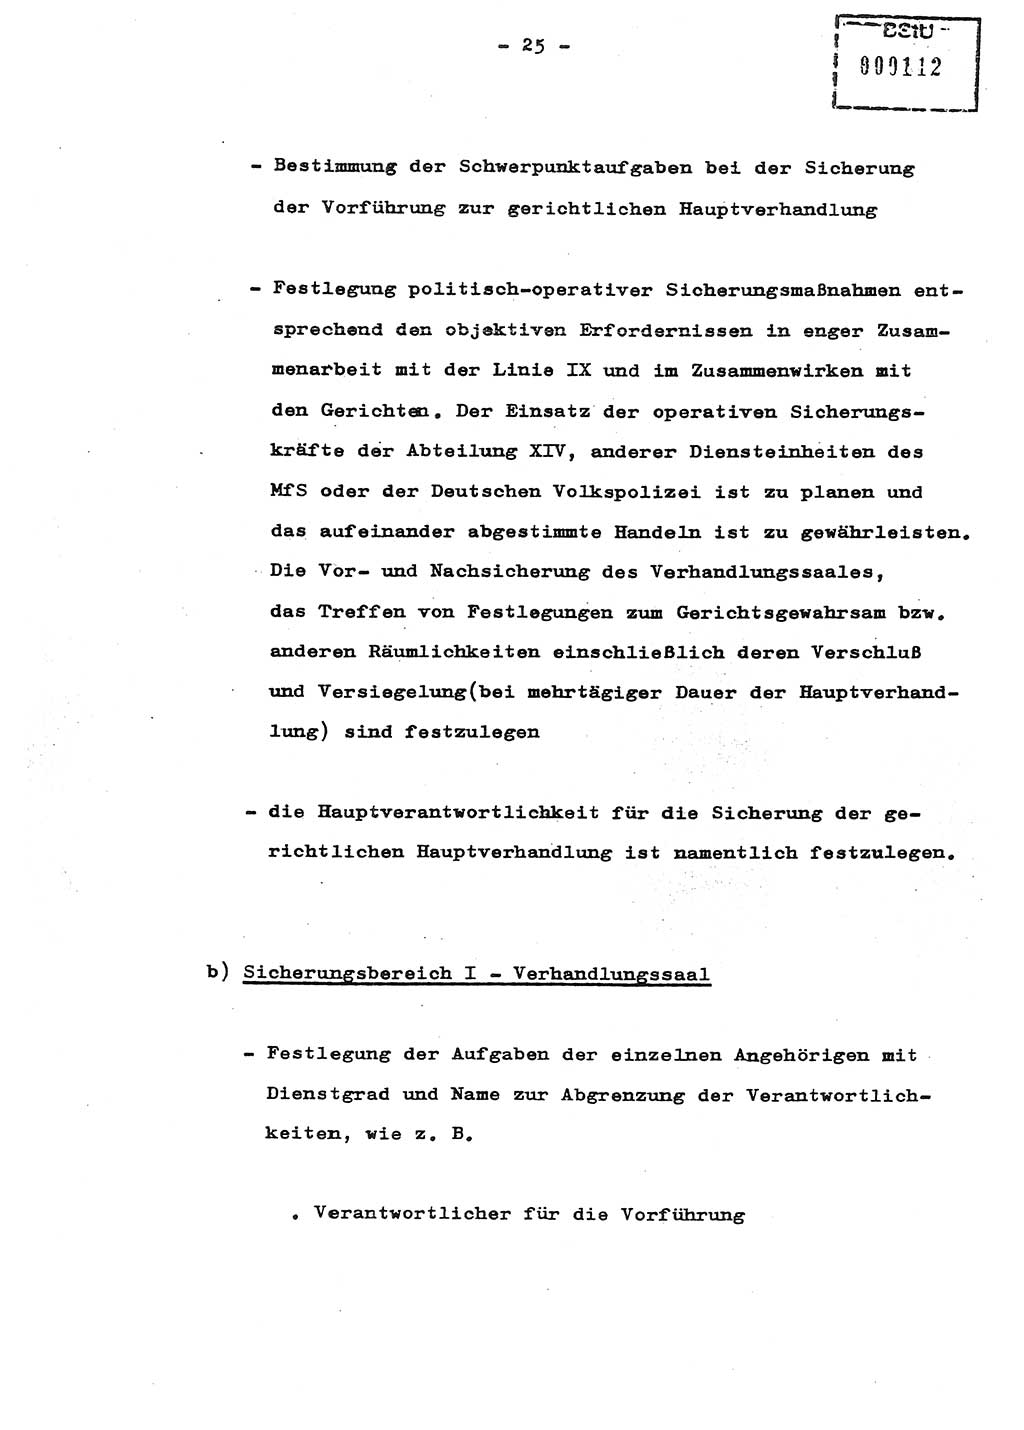 Schulungsmaterial Exemplar-Nr.: 8, Ministerium für Staatssicherheit [Deutsche Demokratische Republik (DDR)], Abteilung (Abt.) ⅩⅣ, Berlin 1987, Seite 25 (Sch.-Mat. Expl. 8 MfS DDR Abt. ⅩⅣ /87 1987, S. 25)